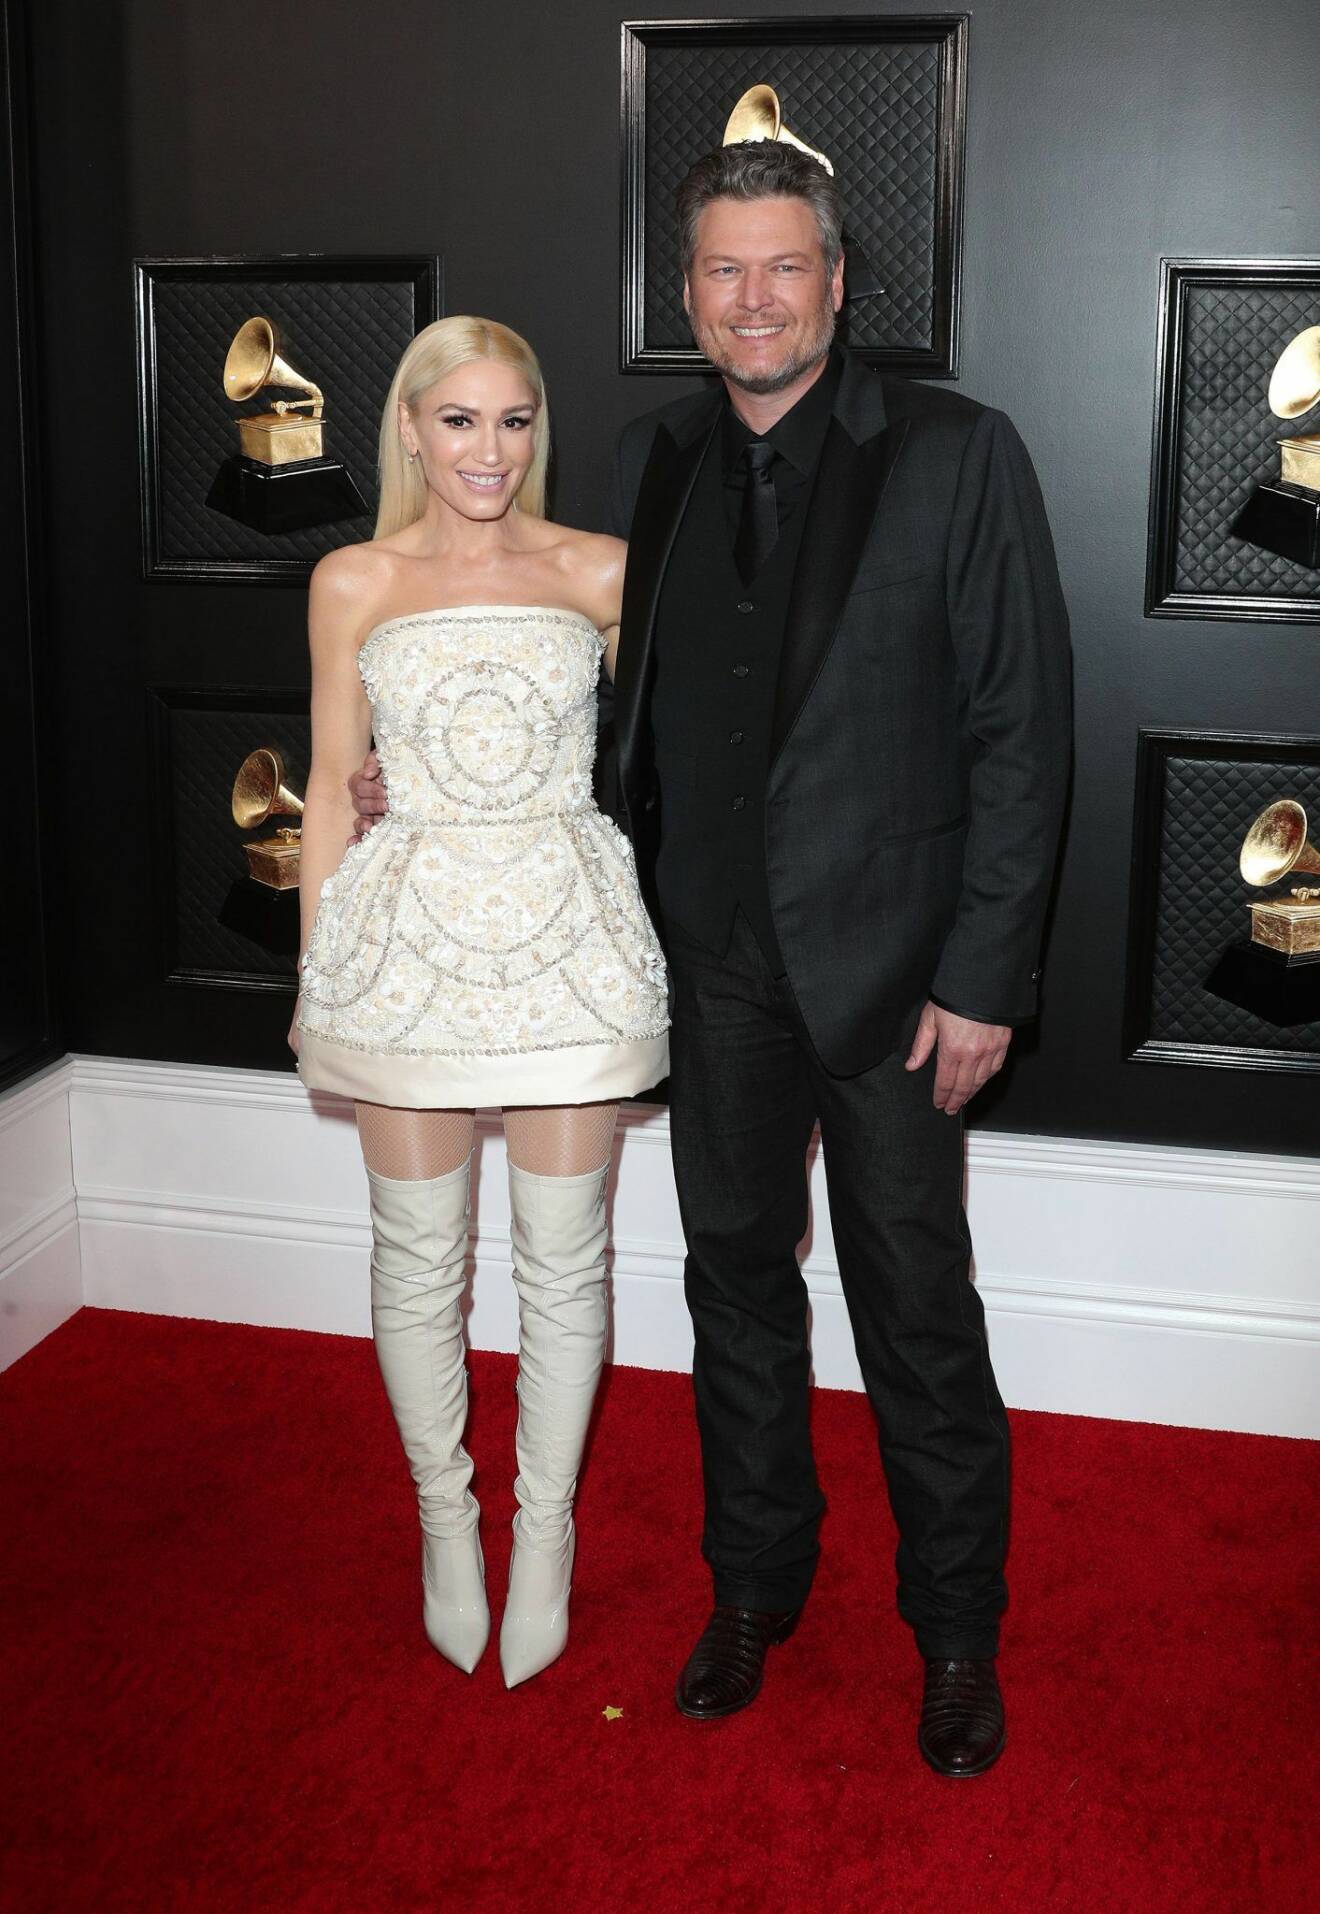 Gwen Stefani, klädd i Dolce & Gabbana, kom till galan med kärleken Blake Shelton vid armen. 